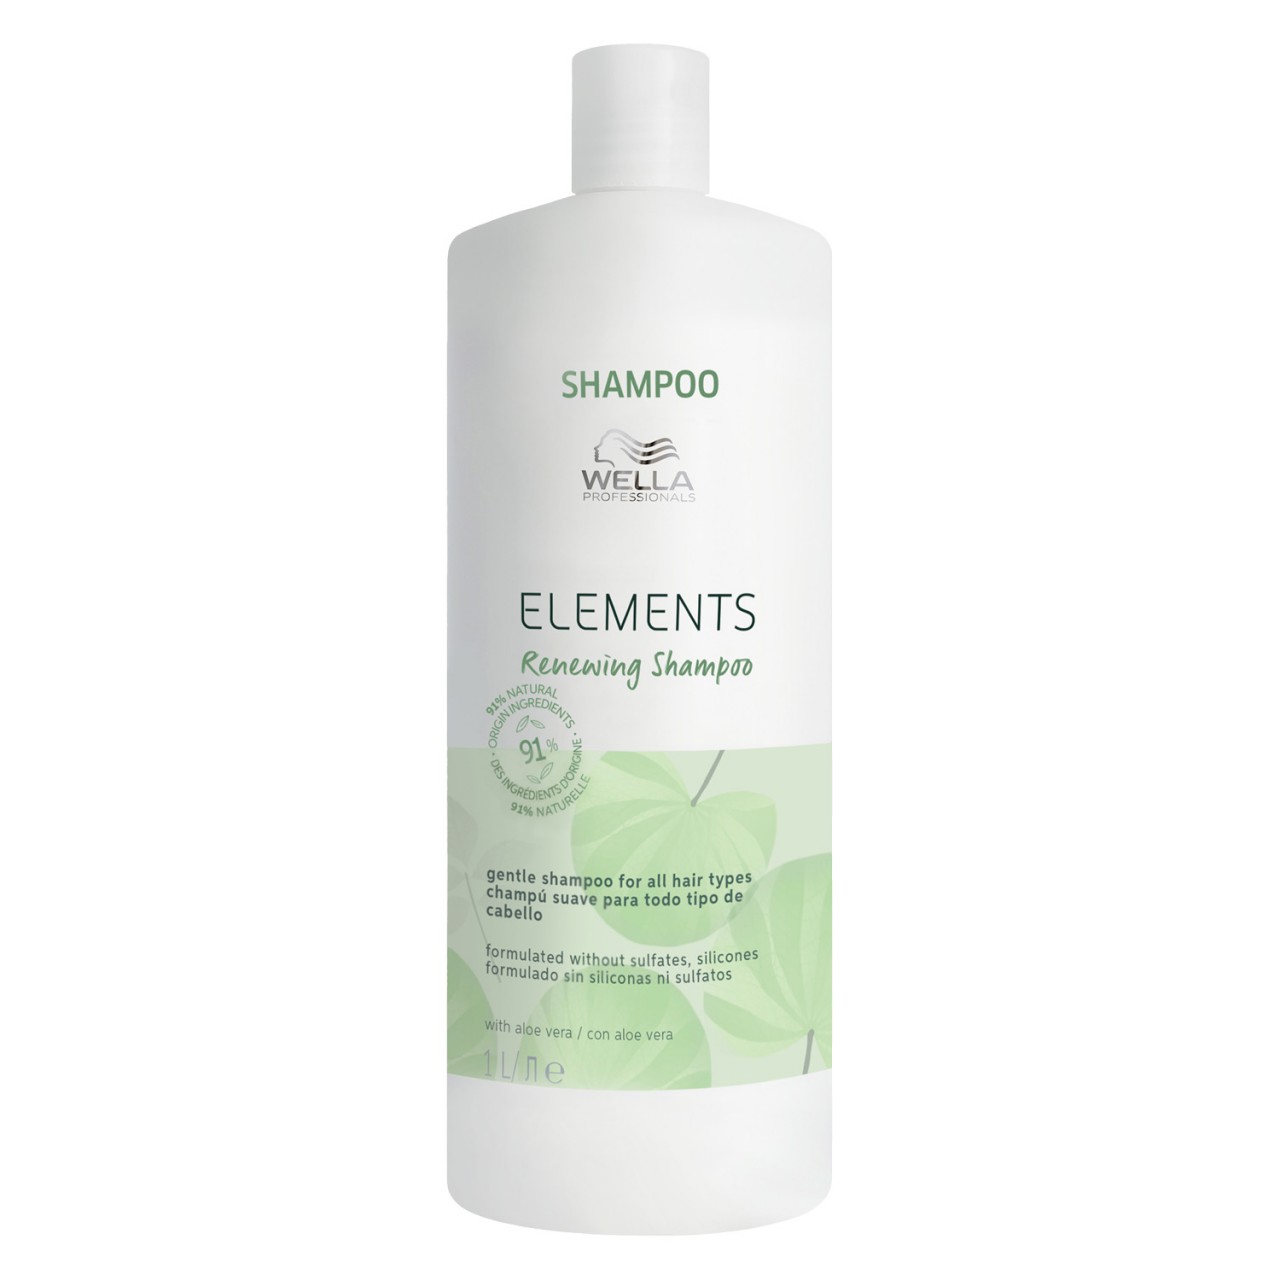 Elements - Renewing Shampoo von Wella